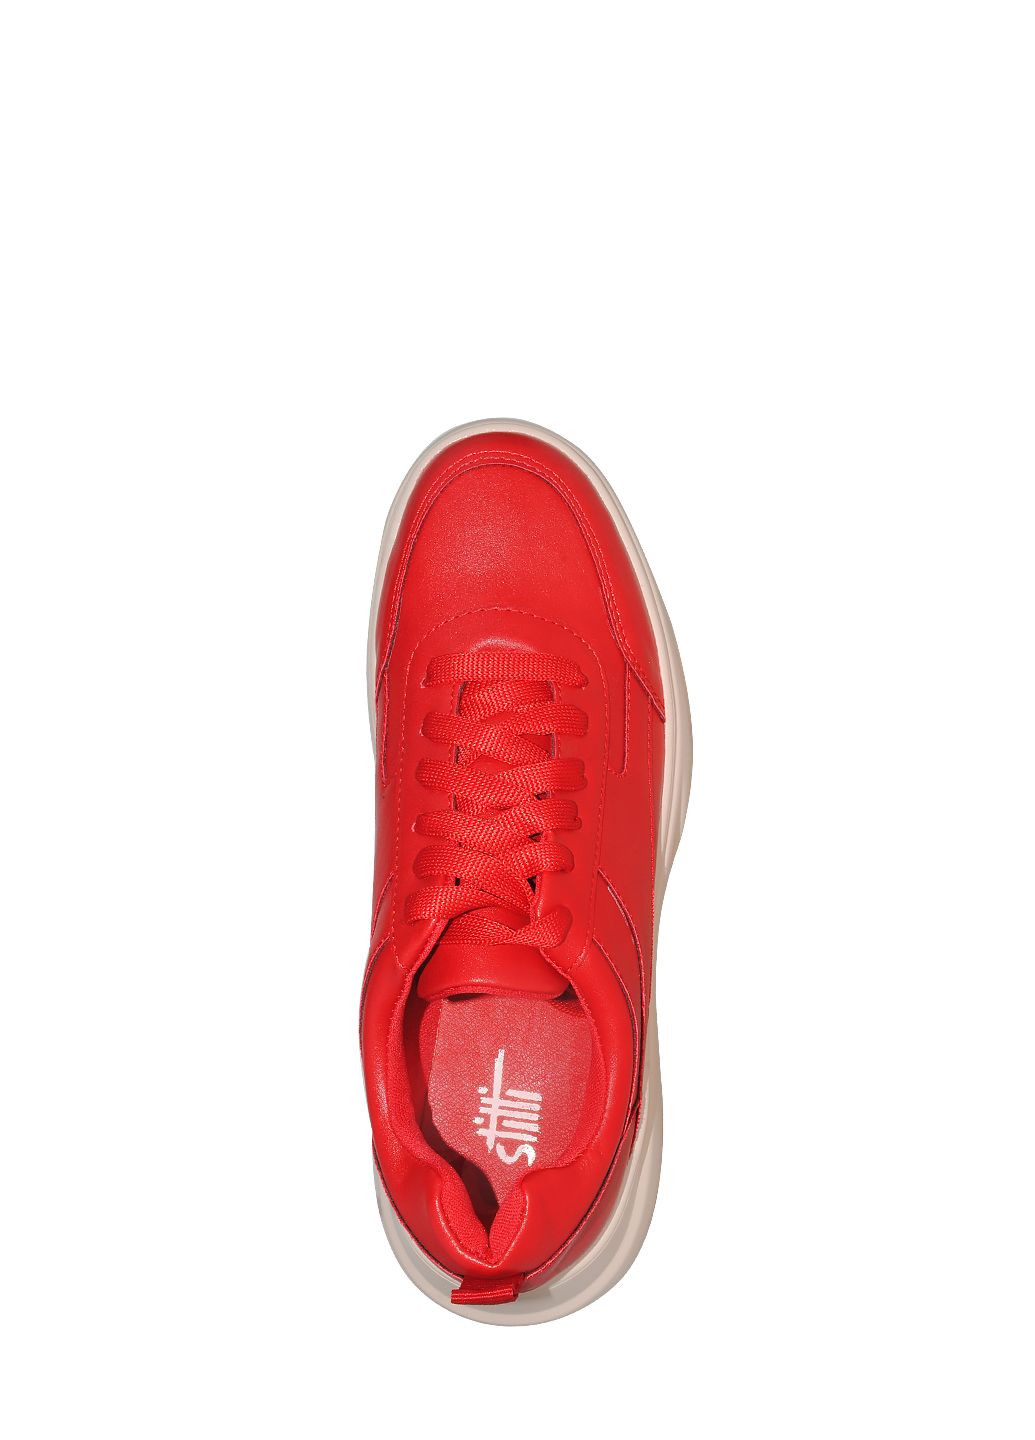 Червоні осінні кросівки 315-8 red Stilli